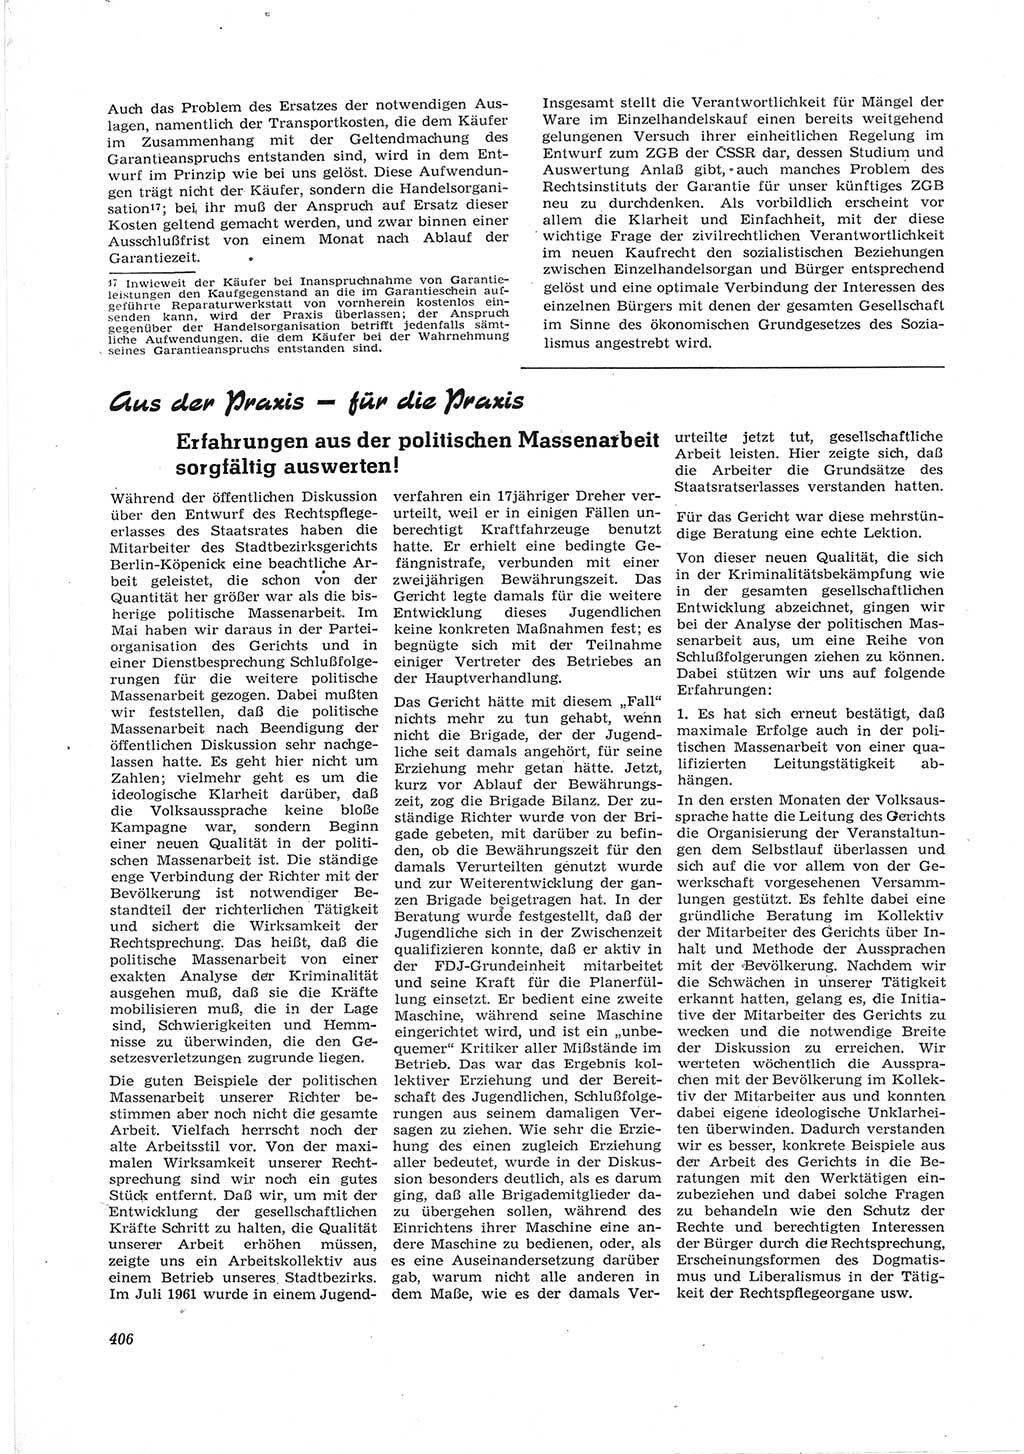 Neue Justiz (NJ), Zeitschrift für Recht und Rechtswissenschaft [Deutsche Demokratische Republik (DDR)], 17. Jahrgang 1963, Seite 406 (NJ DDR 1963, S. 406)